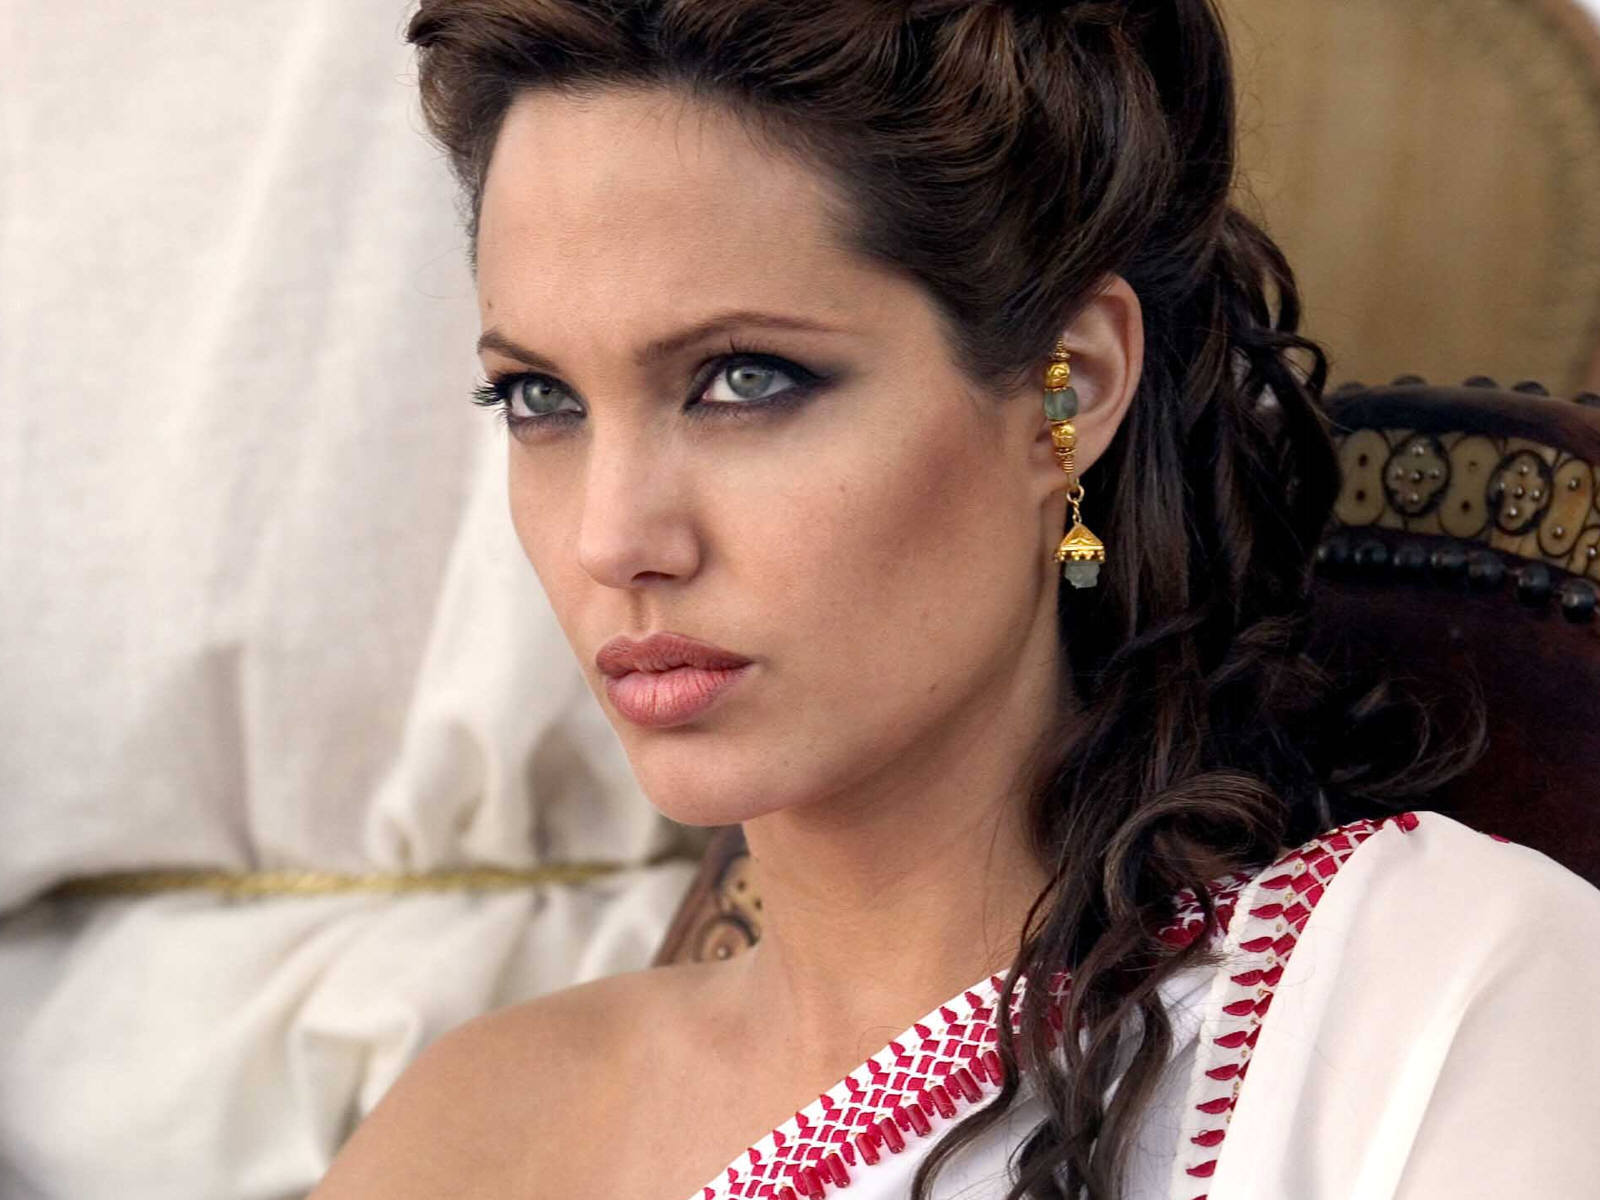 Angelina Jolie Wallpaper